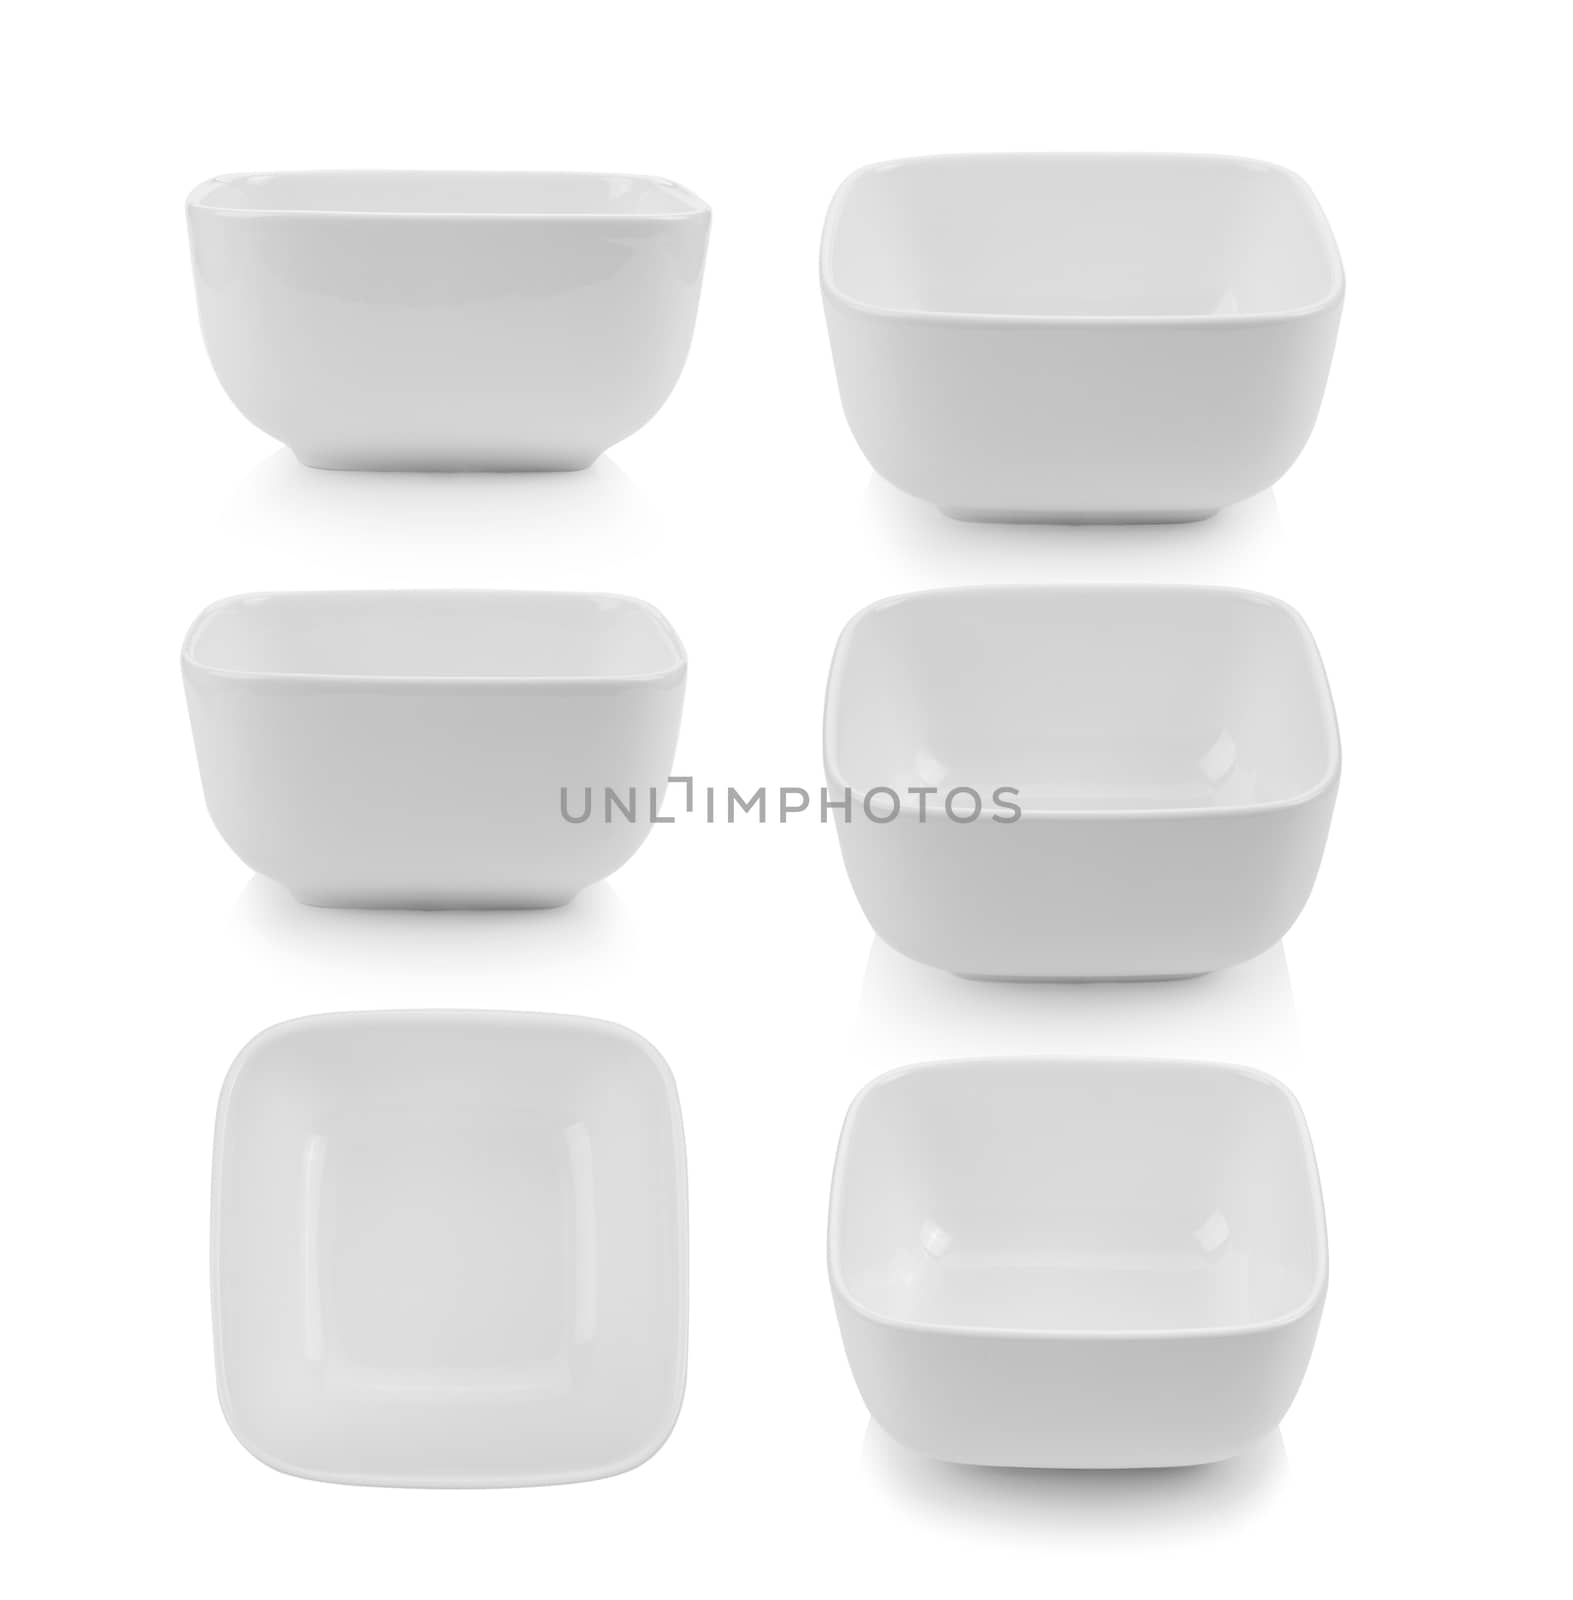 white bowl on white background